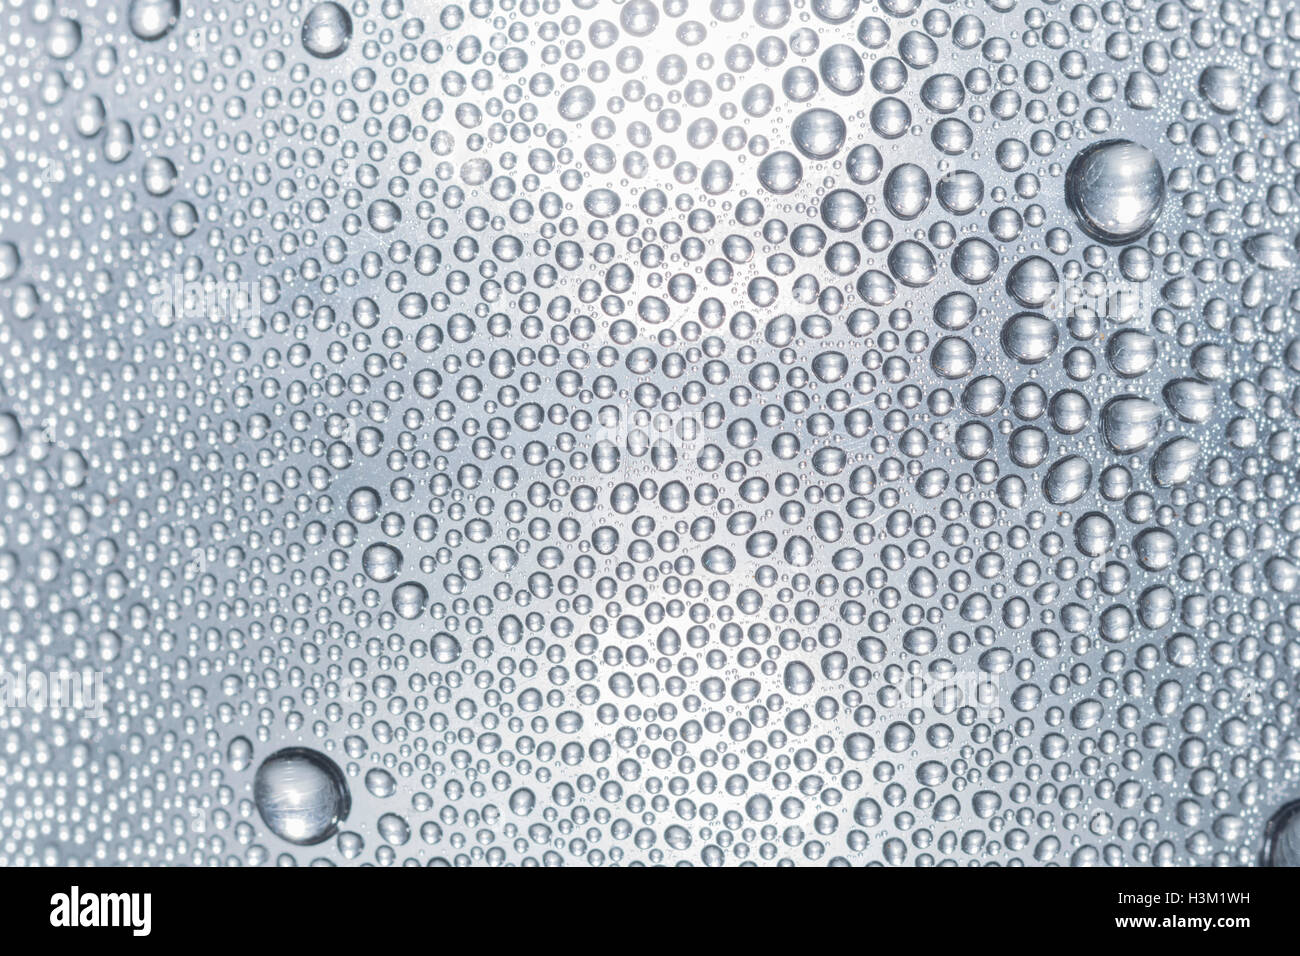 Abstraktes Bild von Kondenswasserperlen auf der Innenseite einer PTFE-Flasche. World Water Day Konzept, Water Day Abstract, Wasserhandelsmarkt. Stockfoto